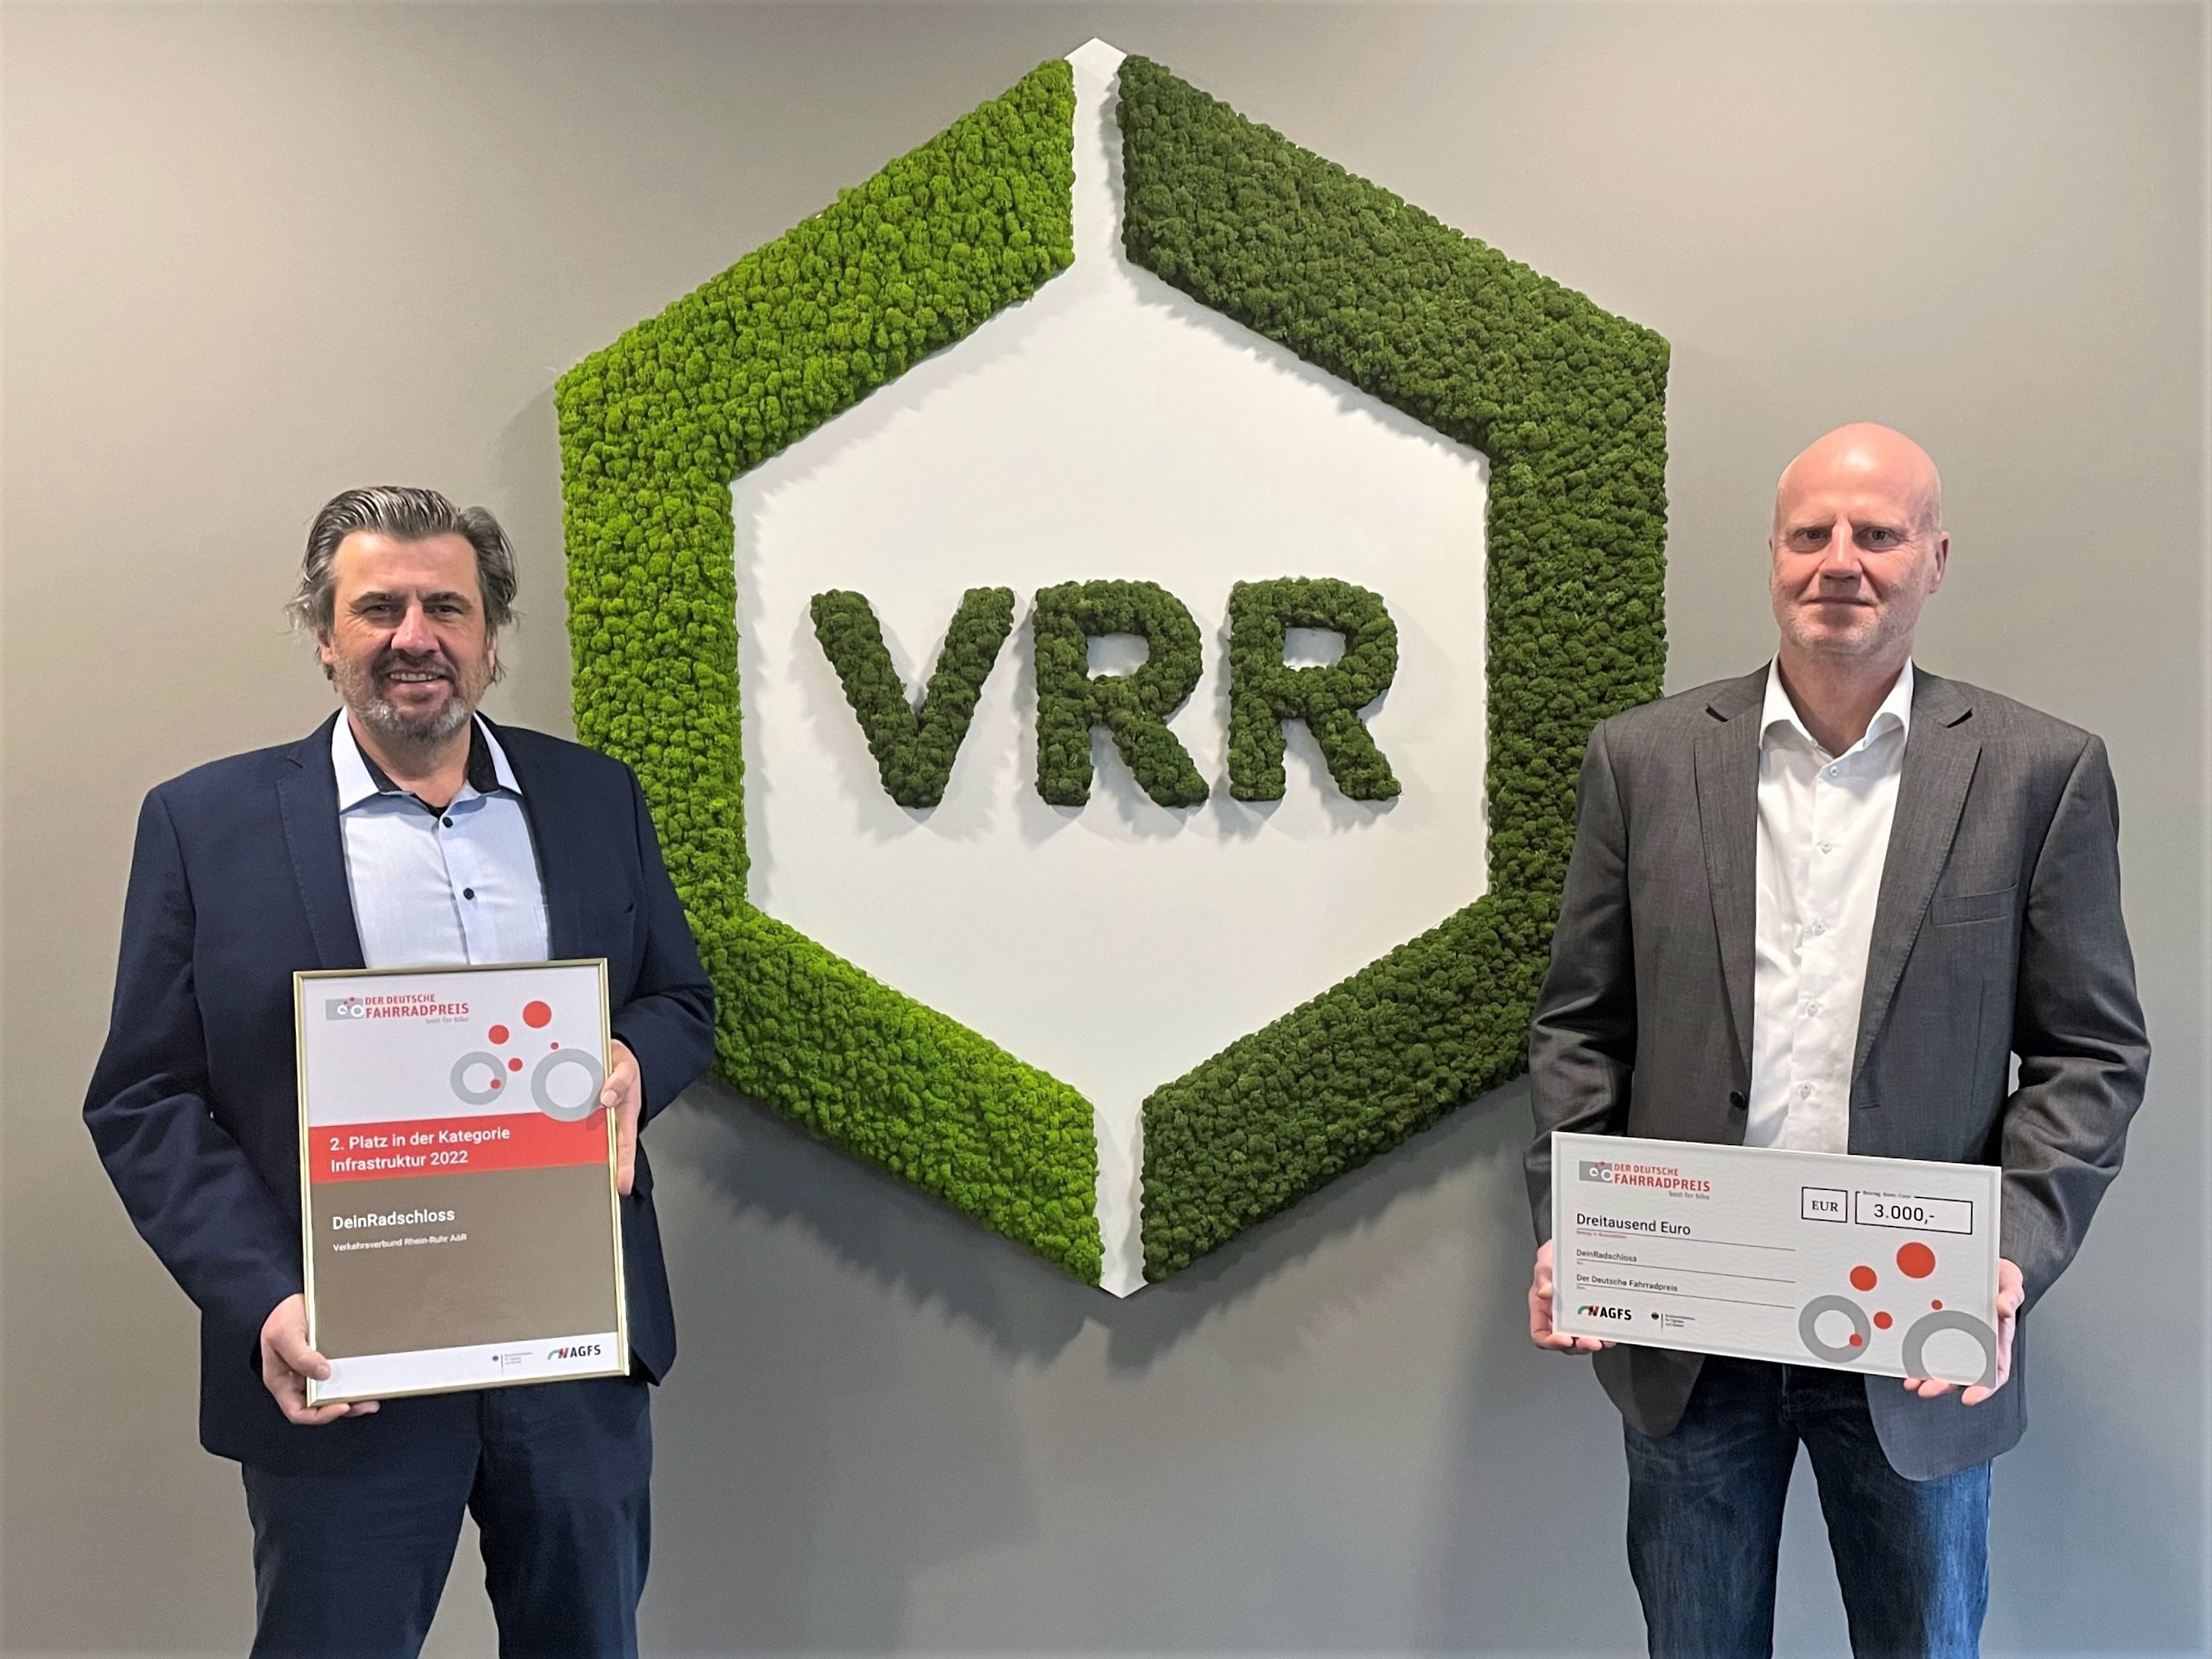 Micheael Zyweck und Rolf Ommen mit den Urkunden vor dem VRR-Logo